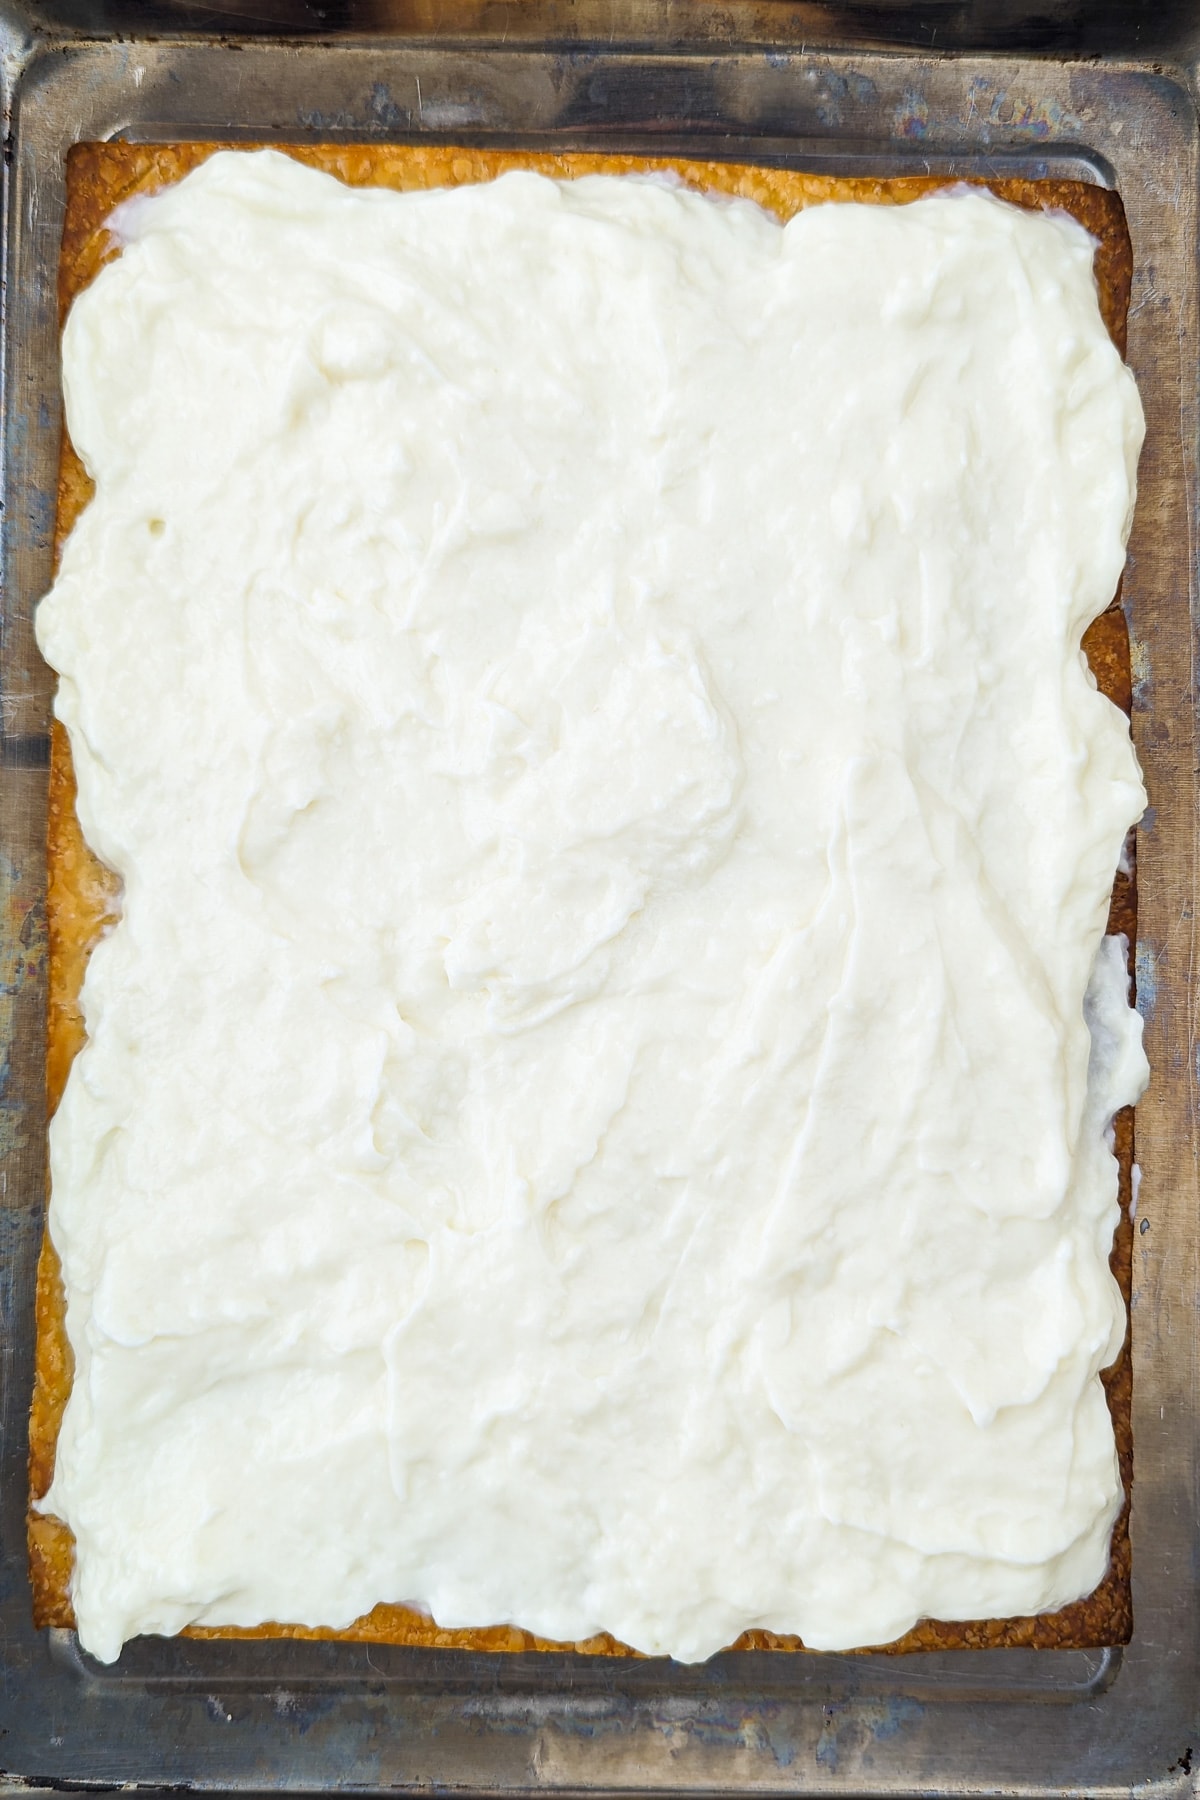 Vanilla cream topped over crunchy dough in a tray bake.